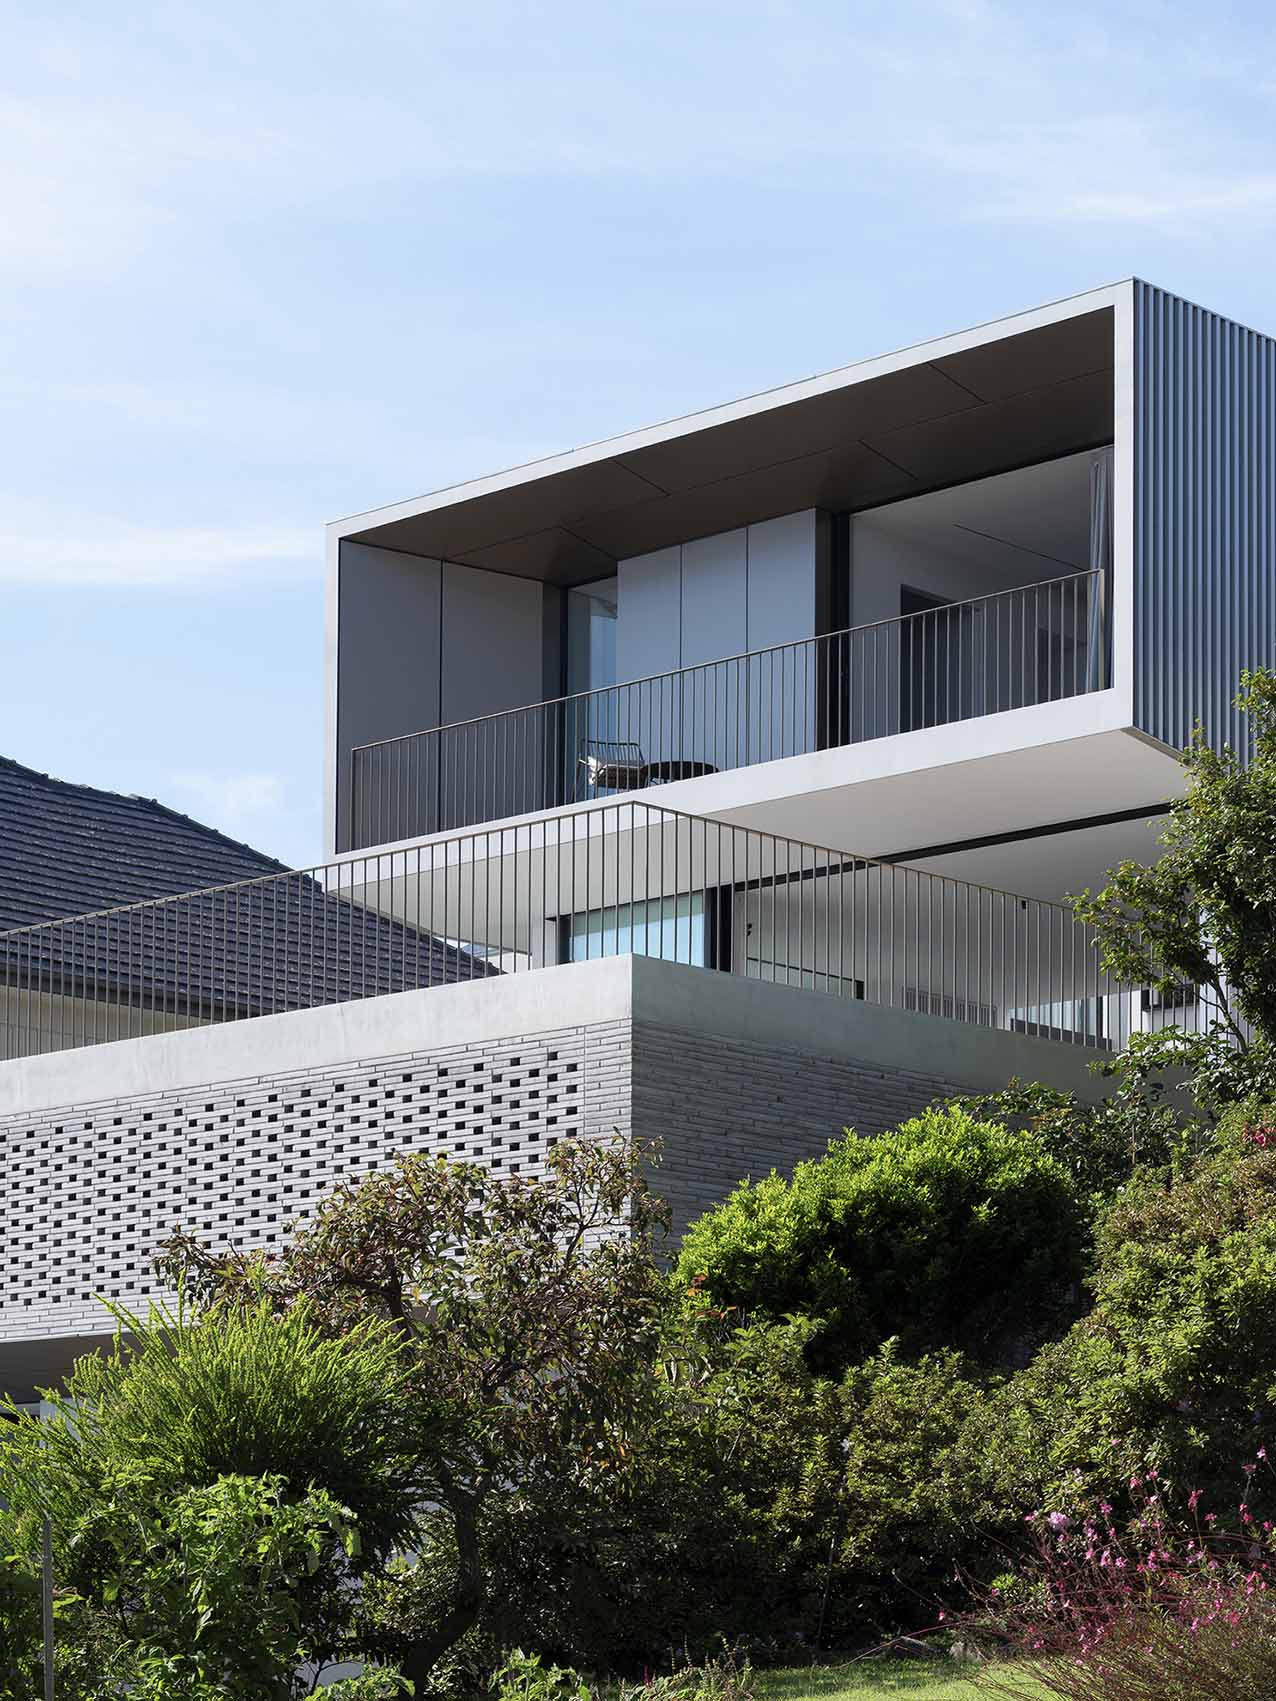 住宅建筑设计,住宅设计案例,pH+ Architects,悉尼,国外住宅设计案例,Blum